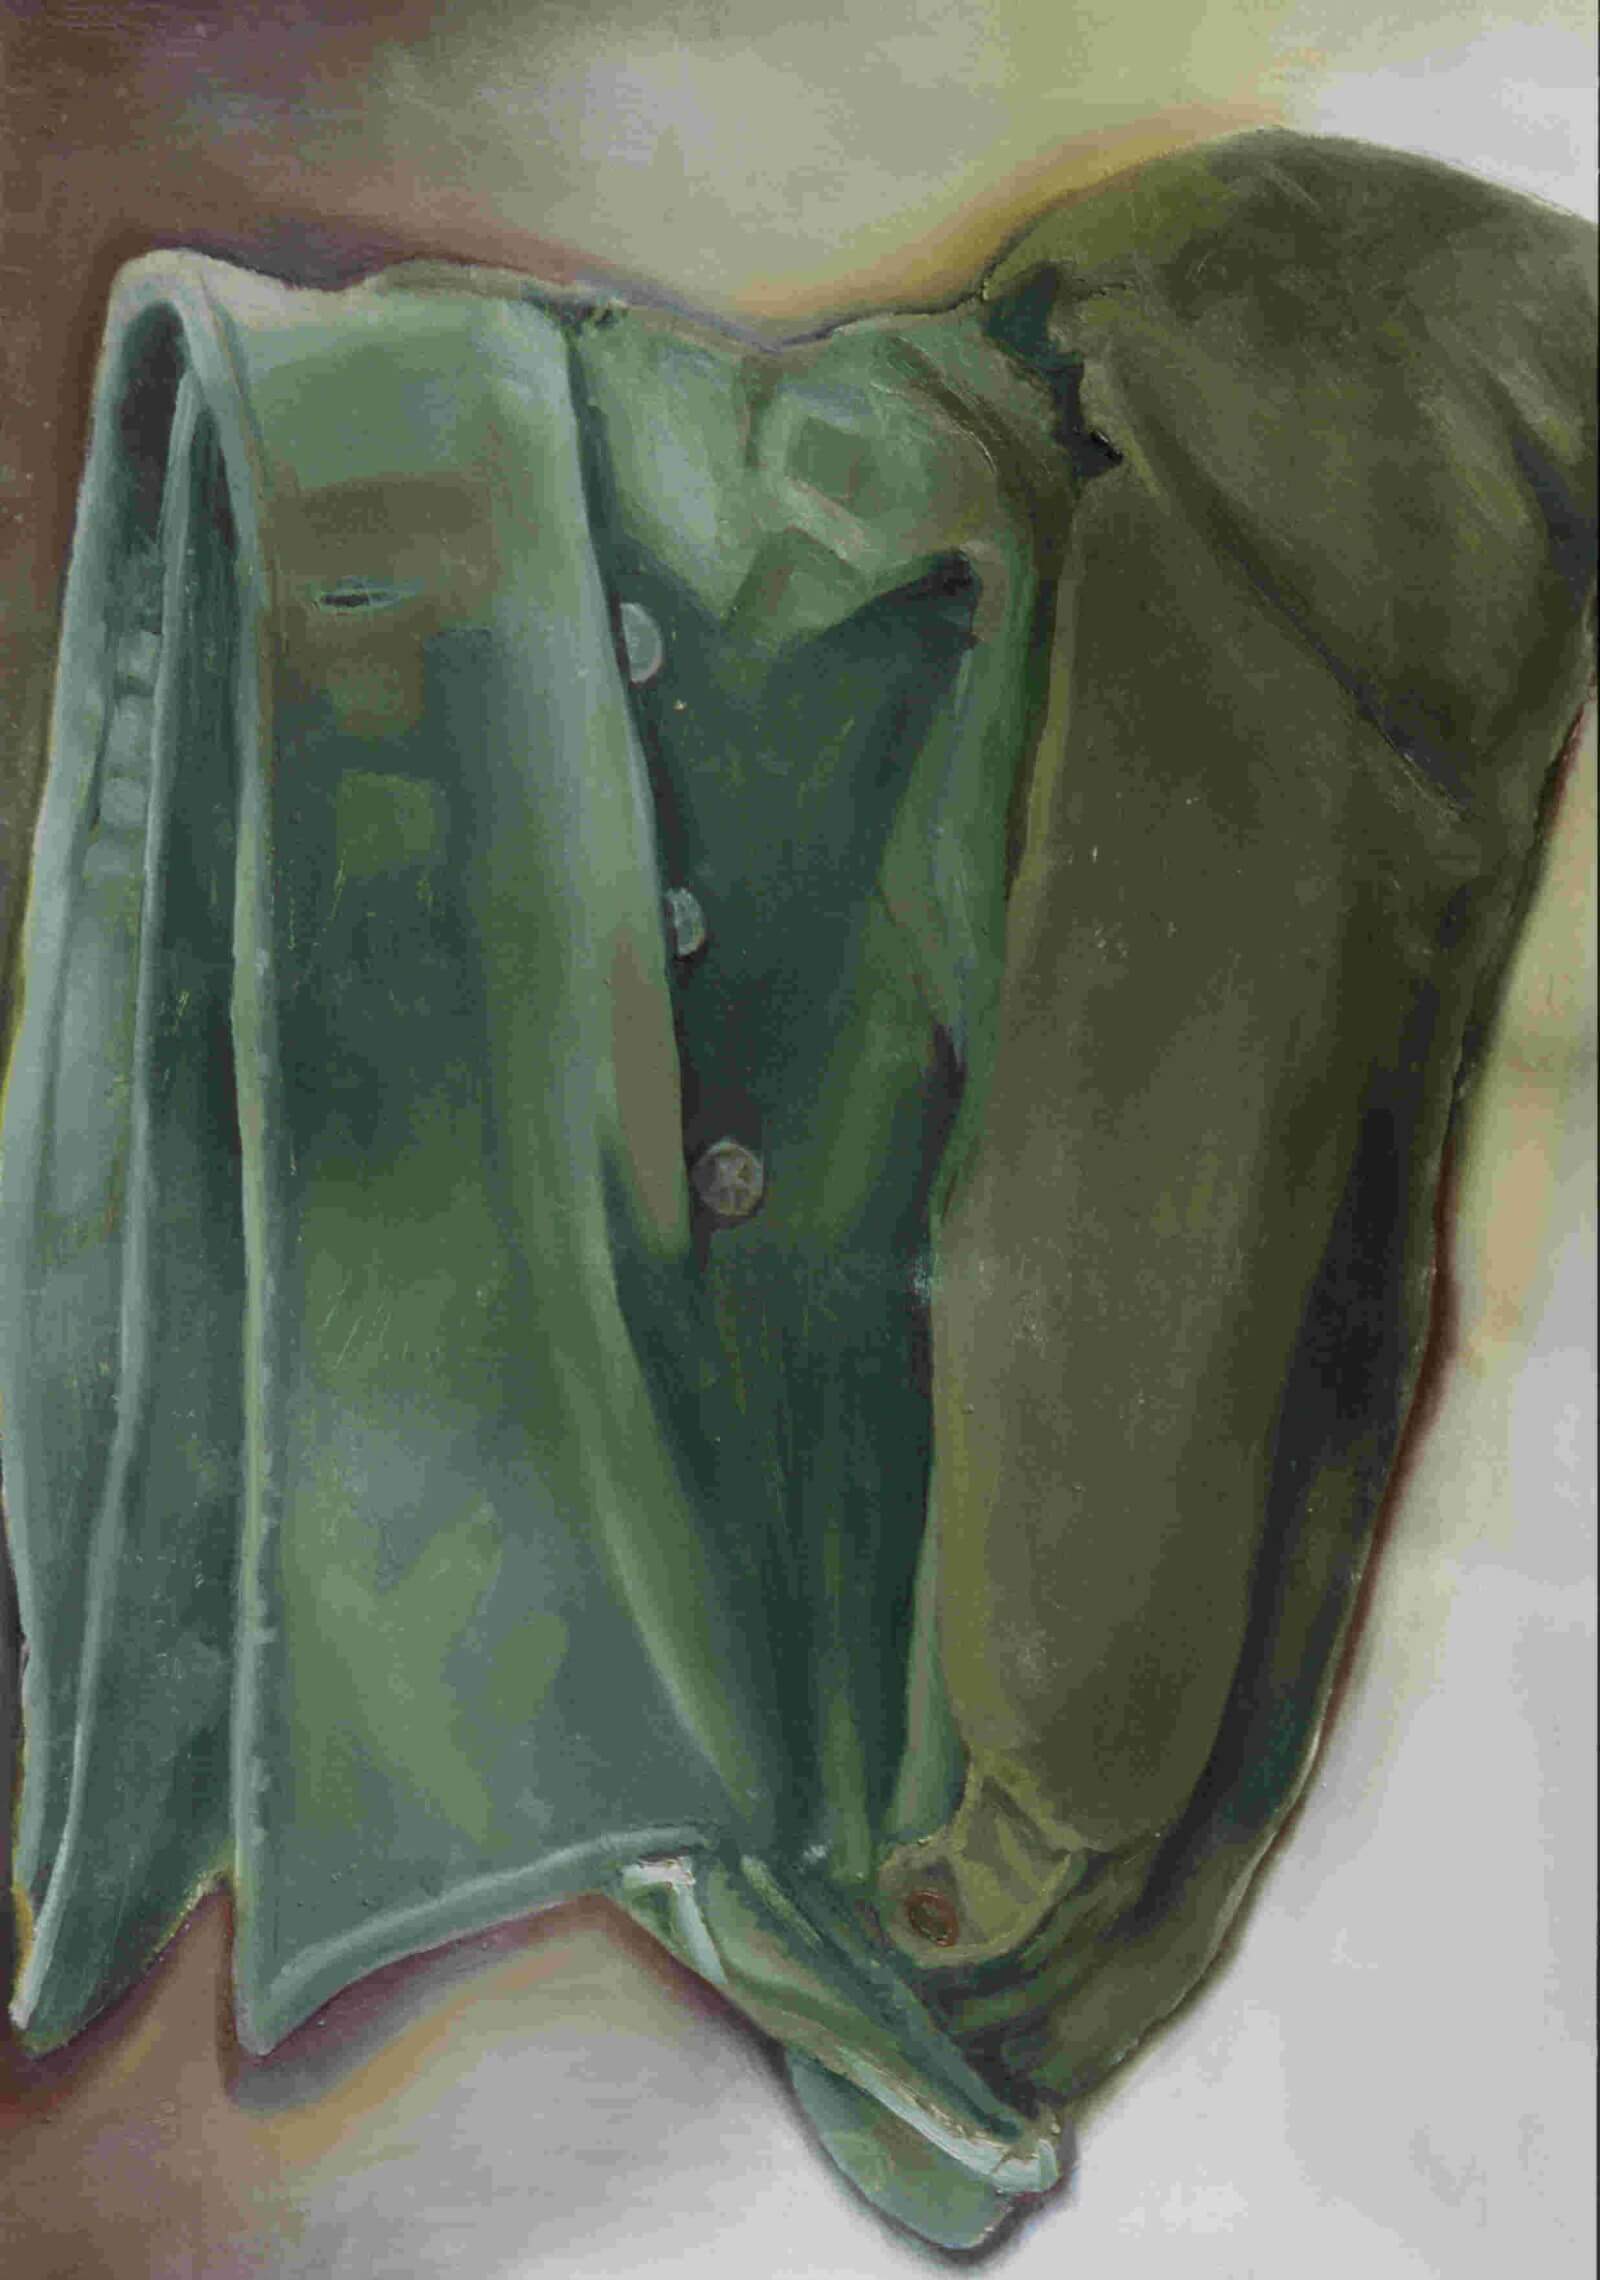 Image Select - Army Jacket - Tamara Gray